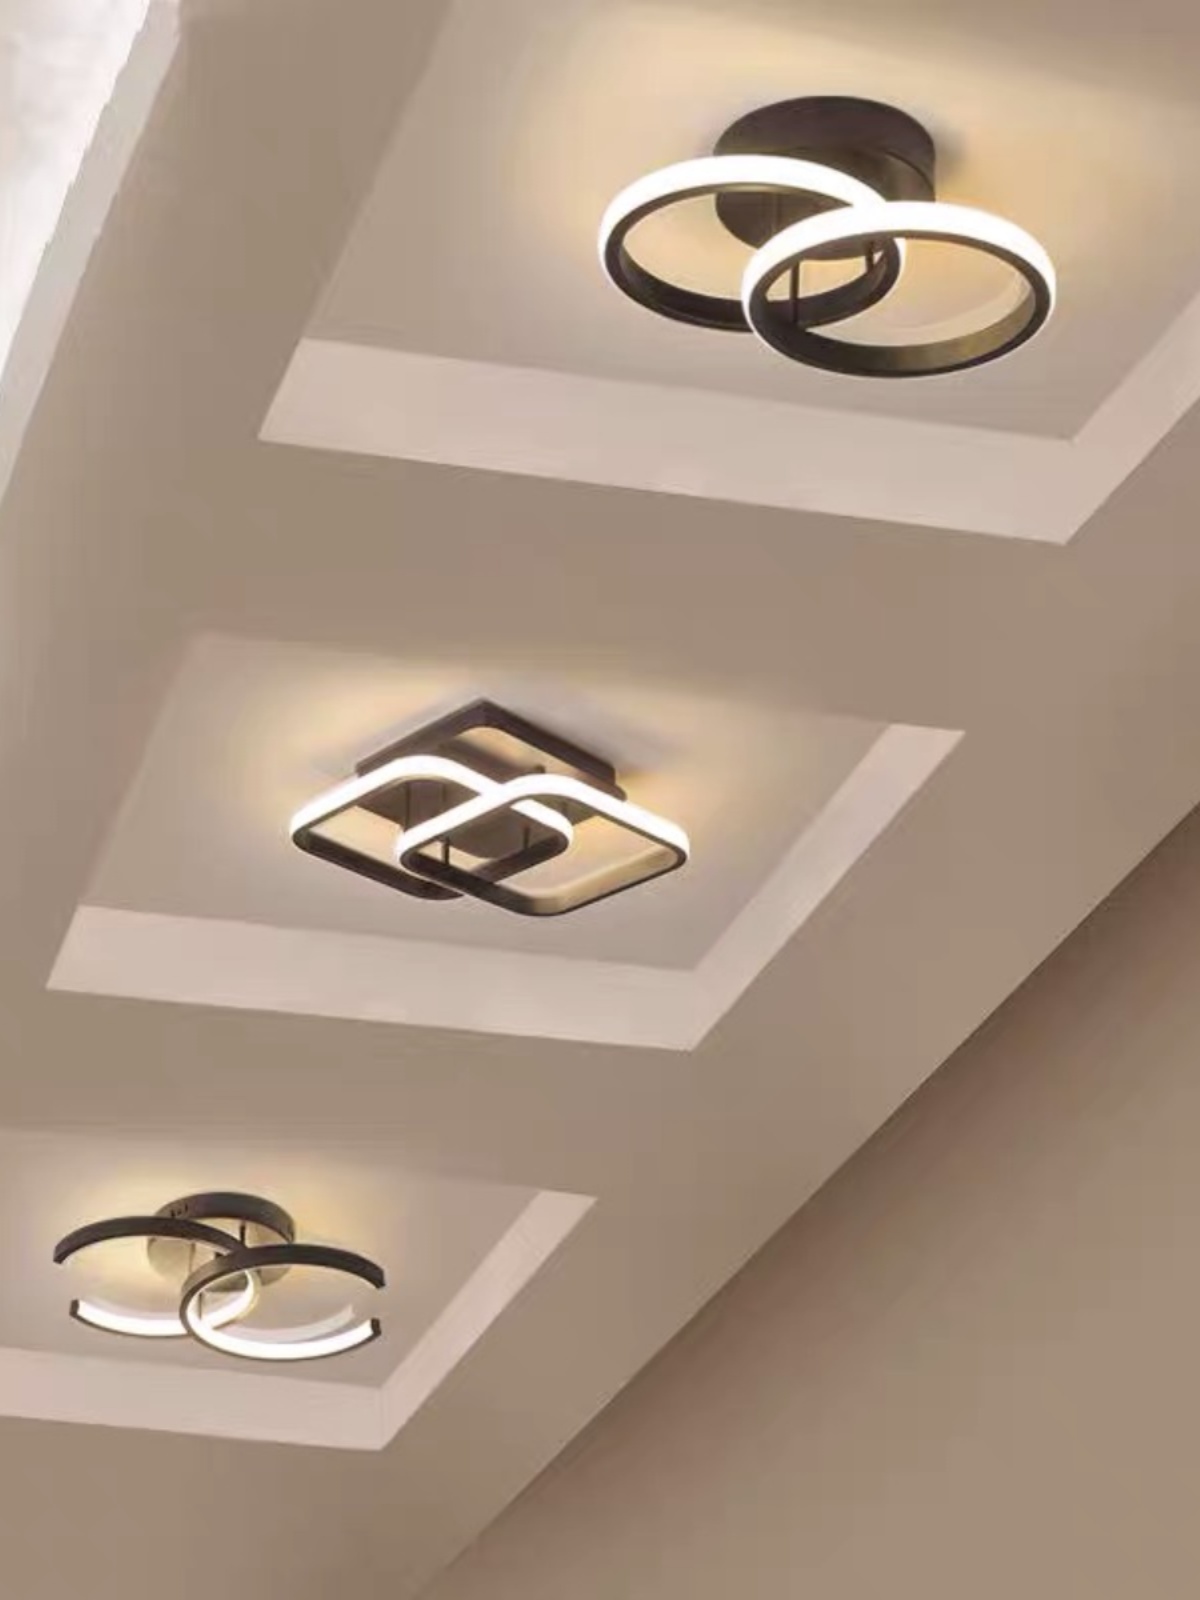 簡約現代風格LED吸頂燈鋁製燈身PMMA燈罩適合1015空間 (4.4折)